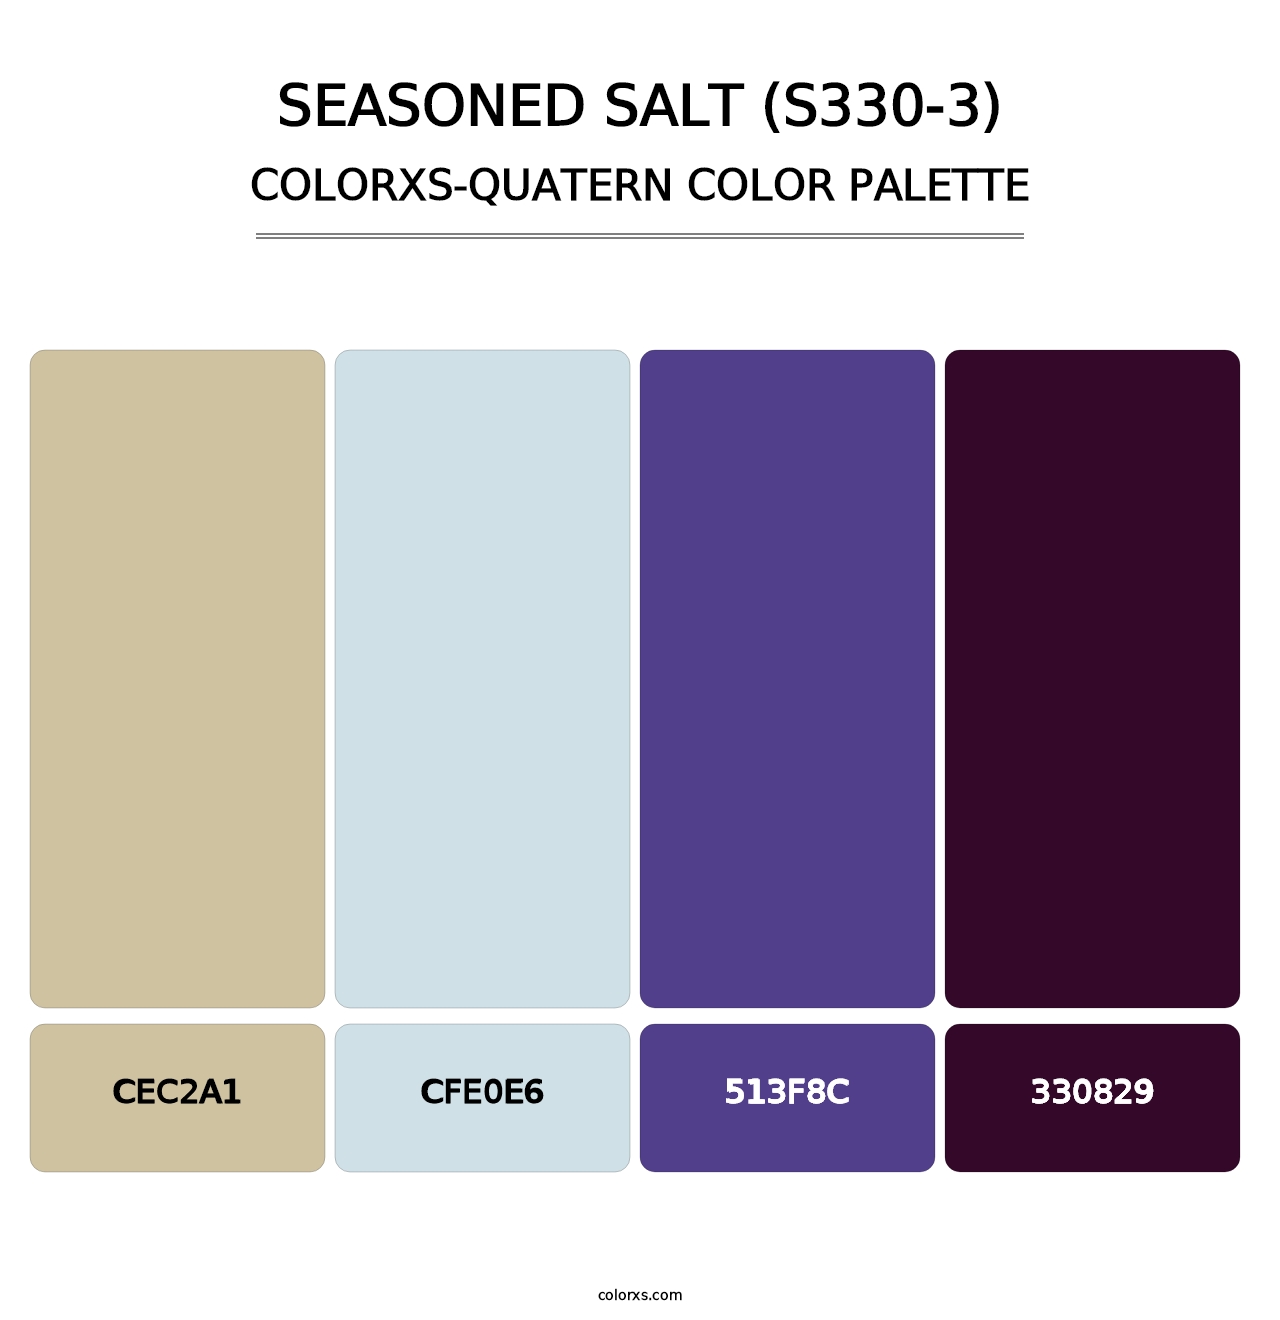 Seasoned Salt (S330-3) - Colorxs Quatern Palette